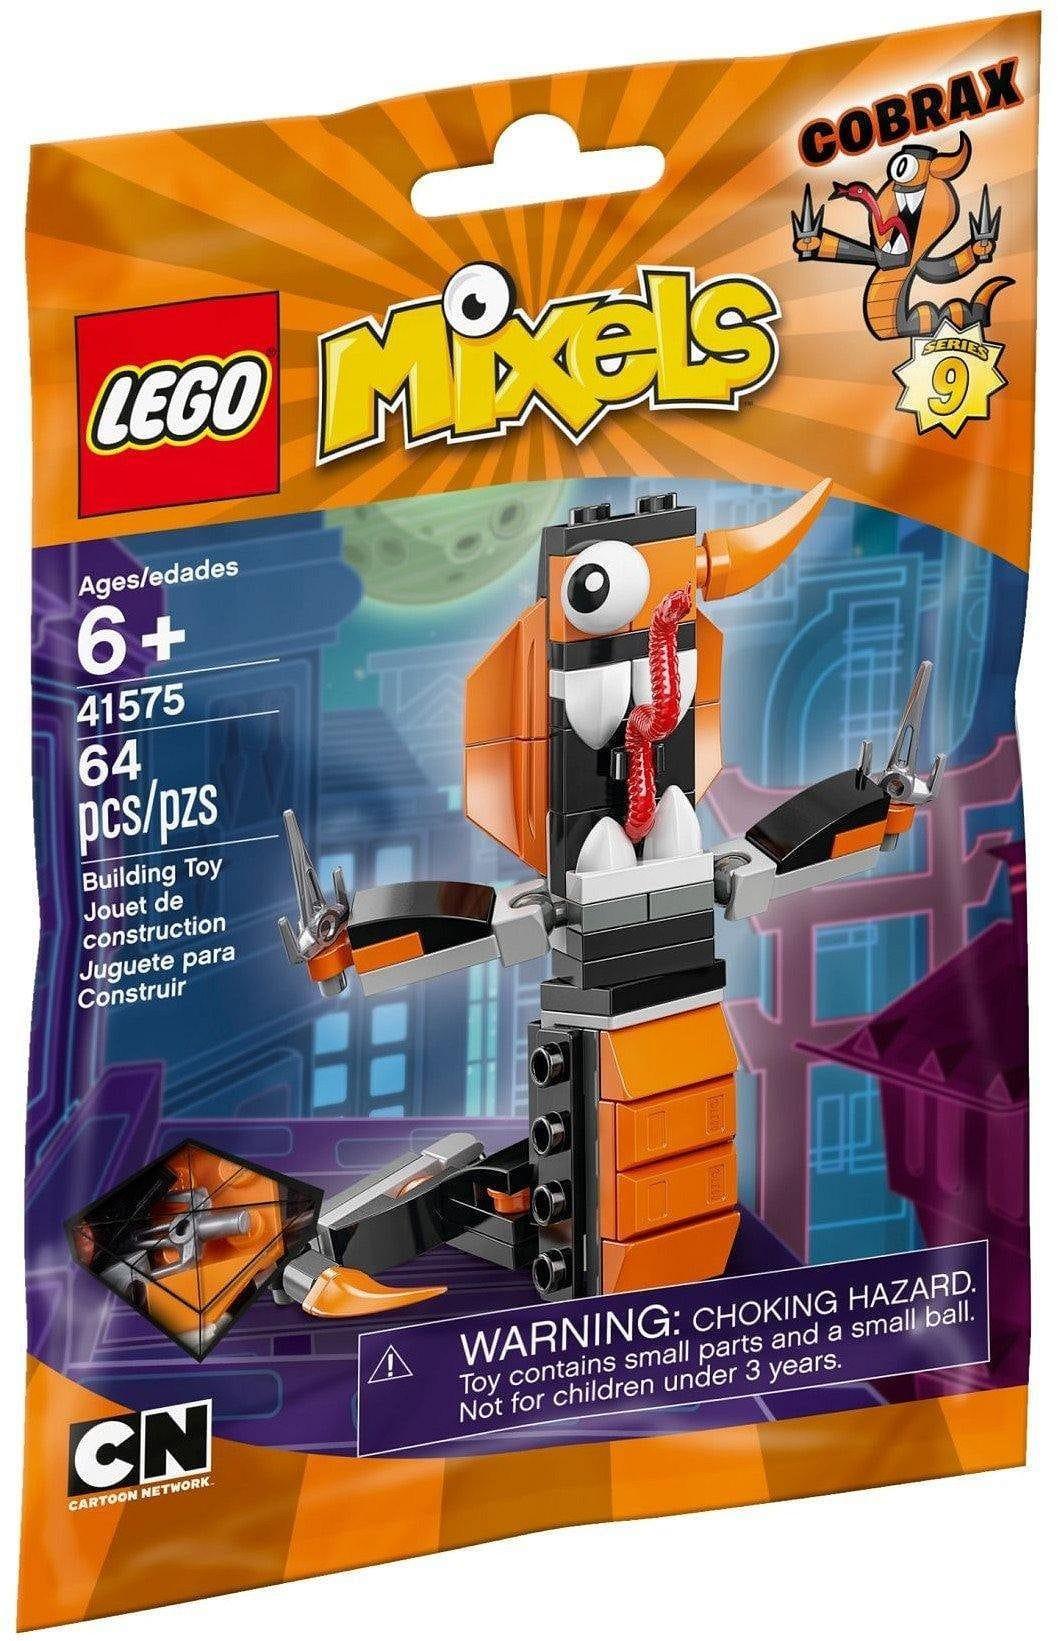 LEGO Mixels Cobrax serie 9 41575 Mixels | 2TTOYS ✓ Official shop<br>